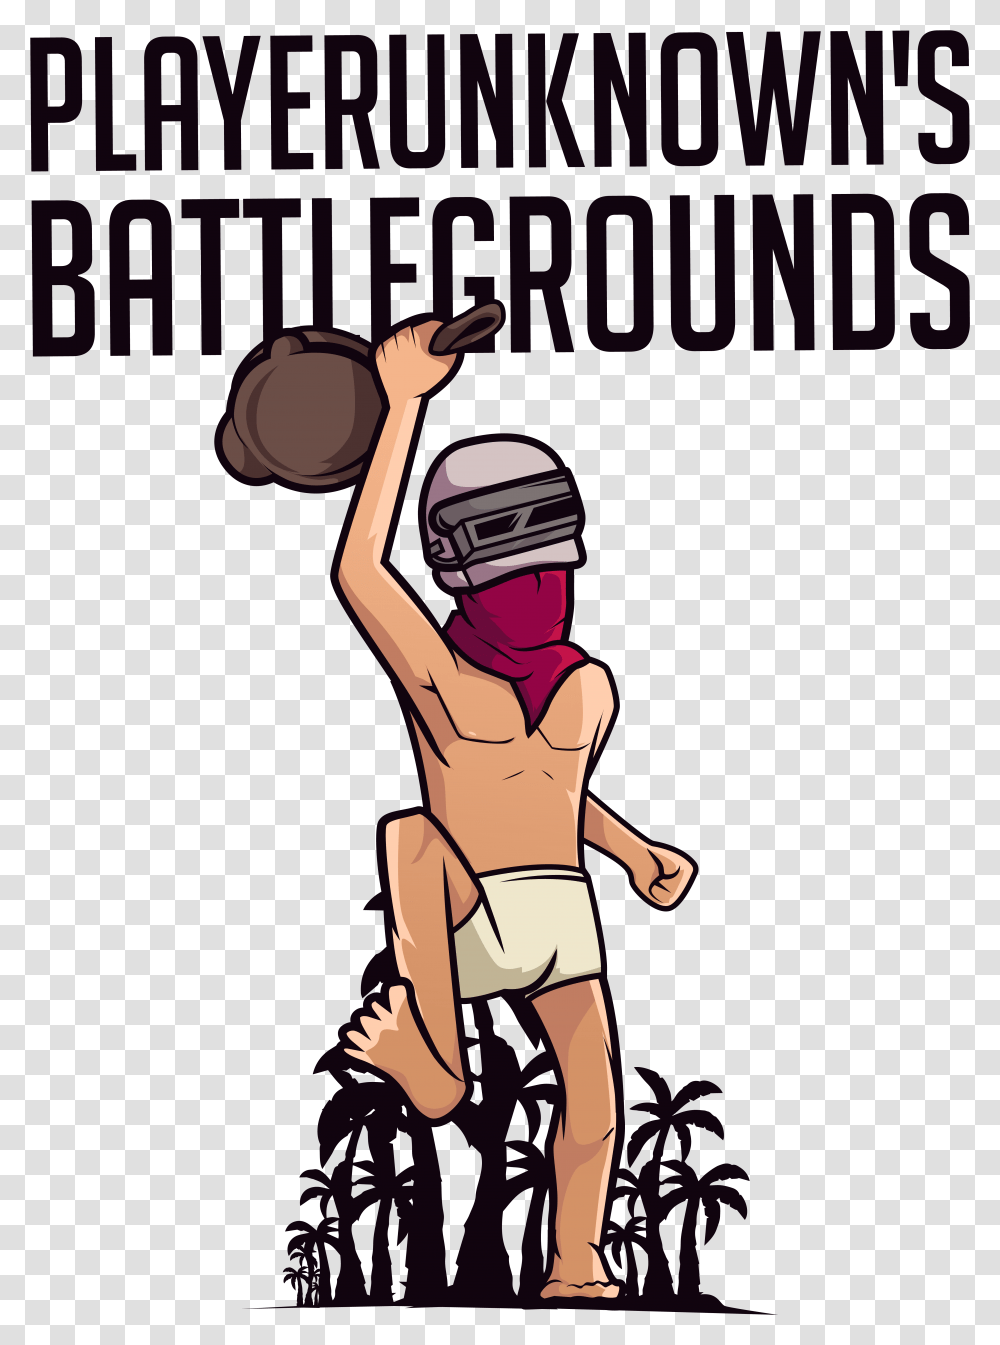 Gaming Pubg Playerunknowns Battlegrounds Tshirt Cartoon Do Battlegrounds, Person, Helmet, People Transparent Png